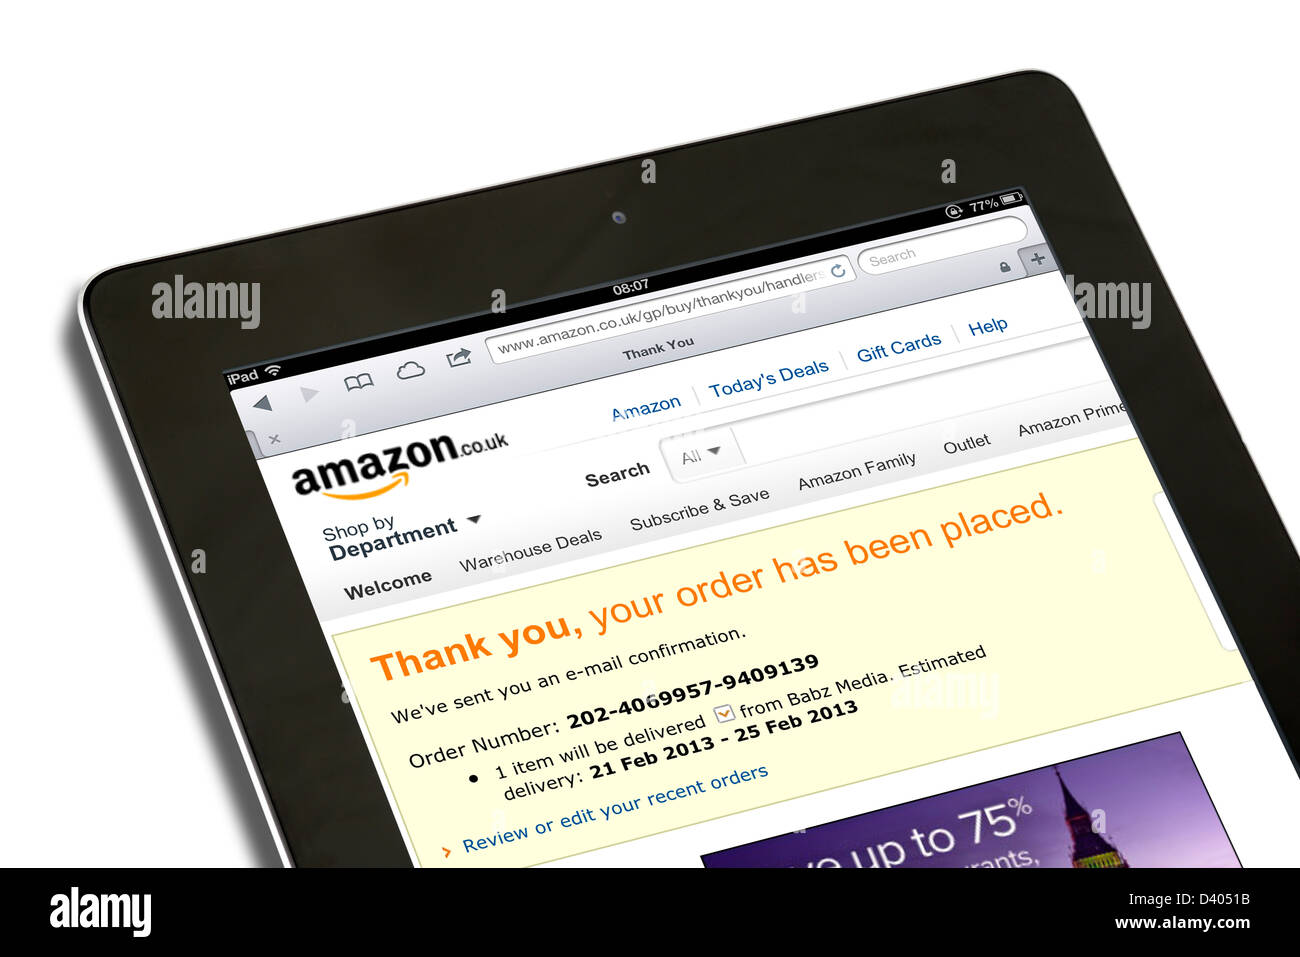 Confirmación de pedido de compras en línea en el sitio web amazon.co.uk vistos en una 4ª generación de Apple iPad tablet pc Foto de stock